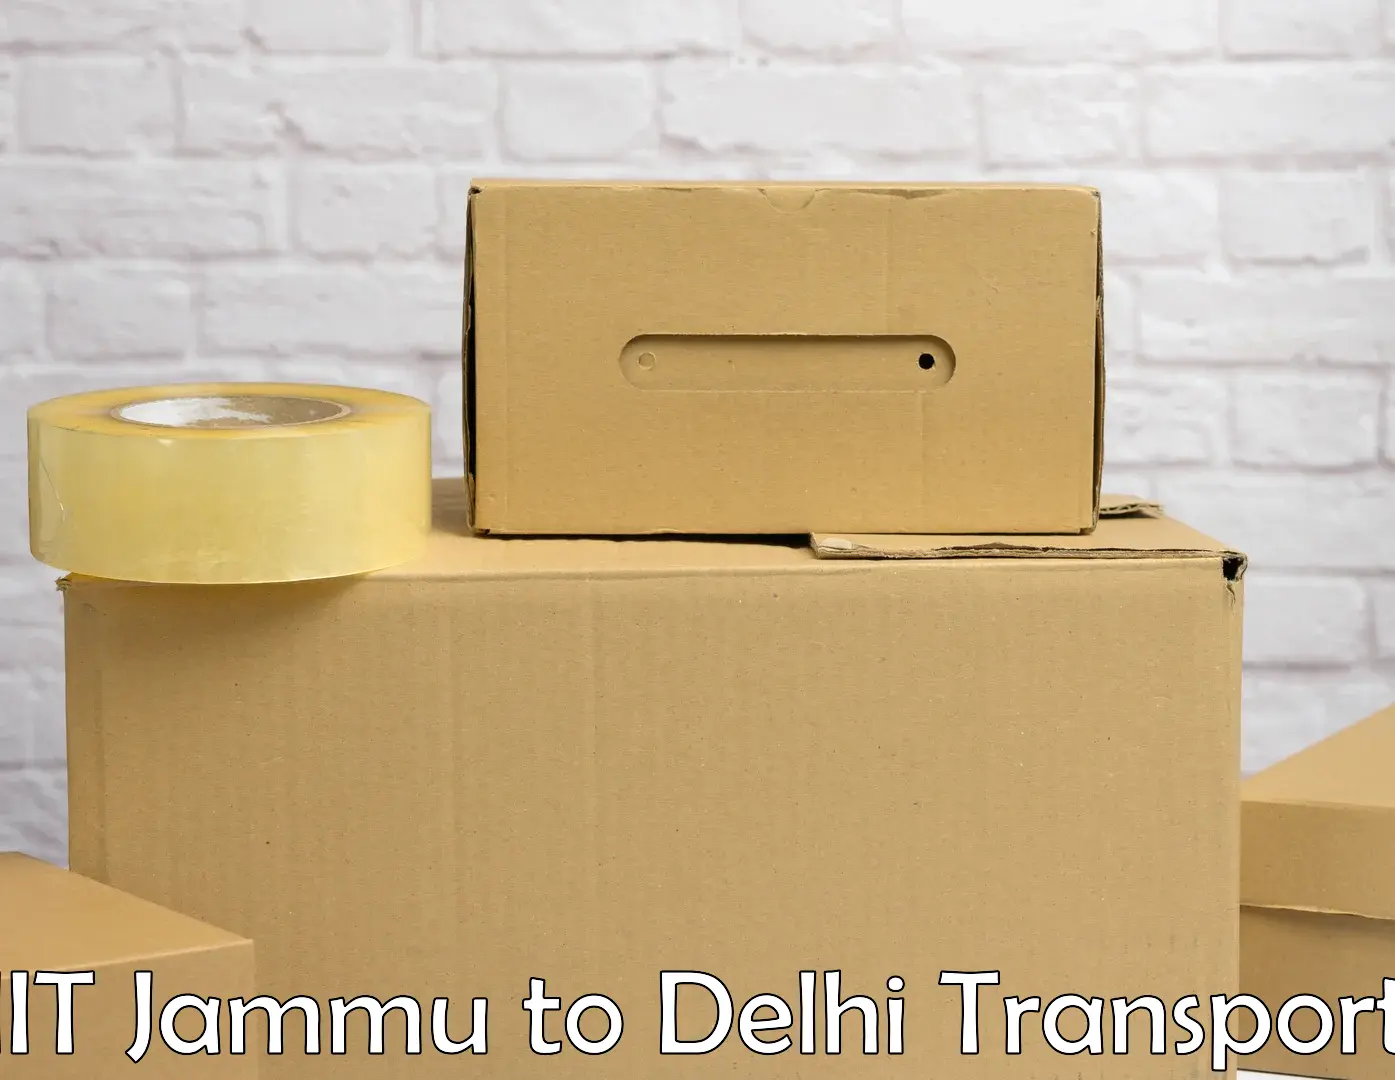 Cargo train transport services IIT Jammu to Delhi